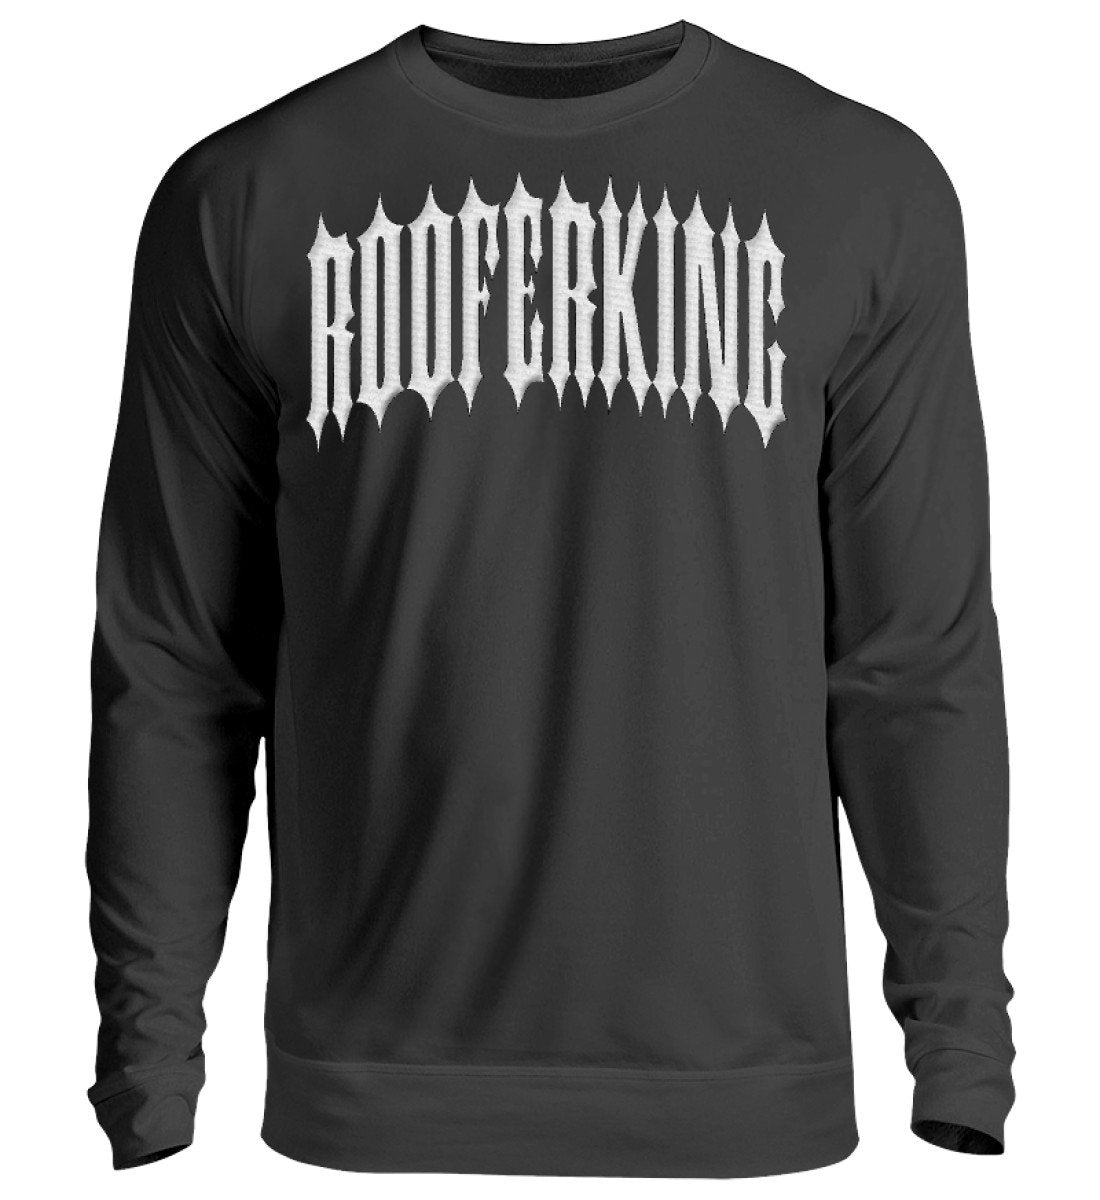 Rooferking  - Dachdecker Sweatshirt mit Stick